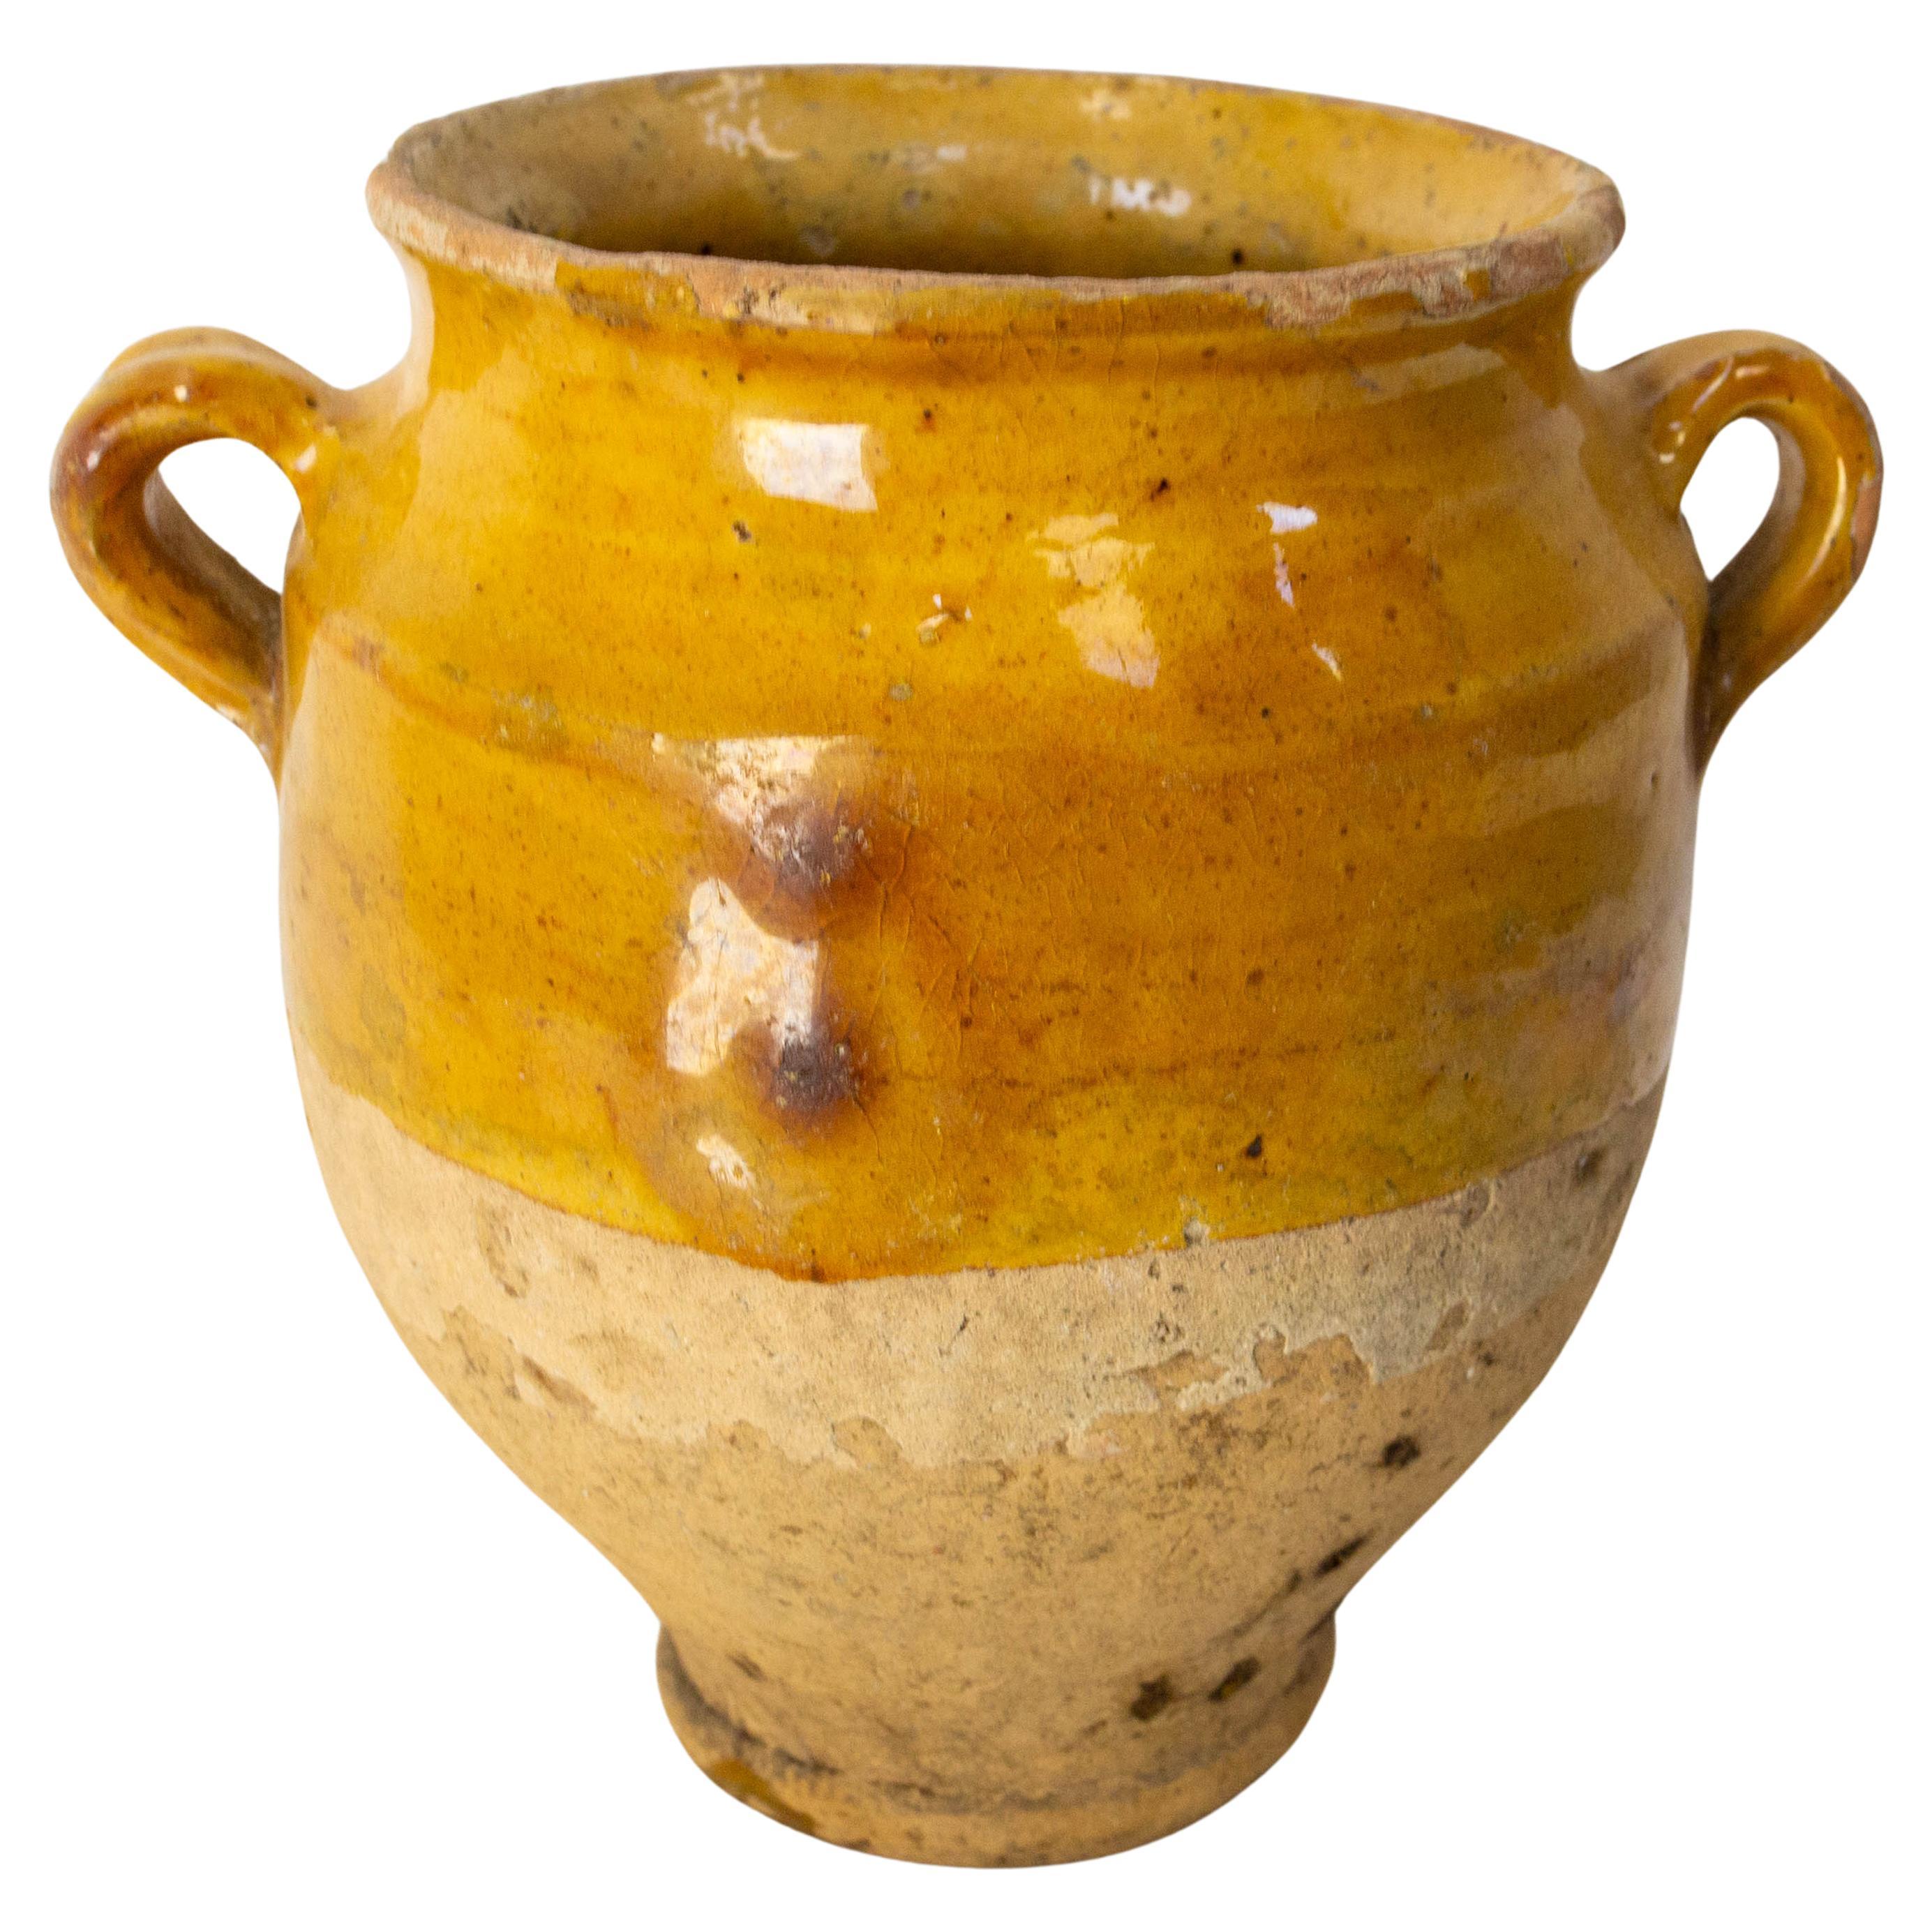 Petit pot à confiture en terre cuite à glaçure jaune, fin du 19ème siècle